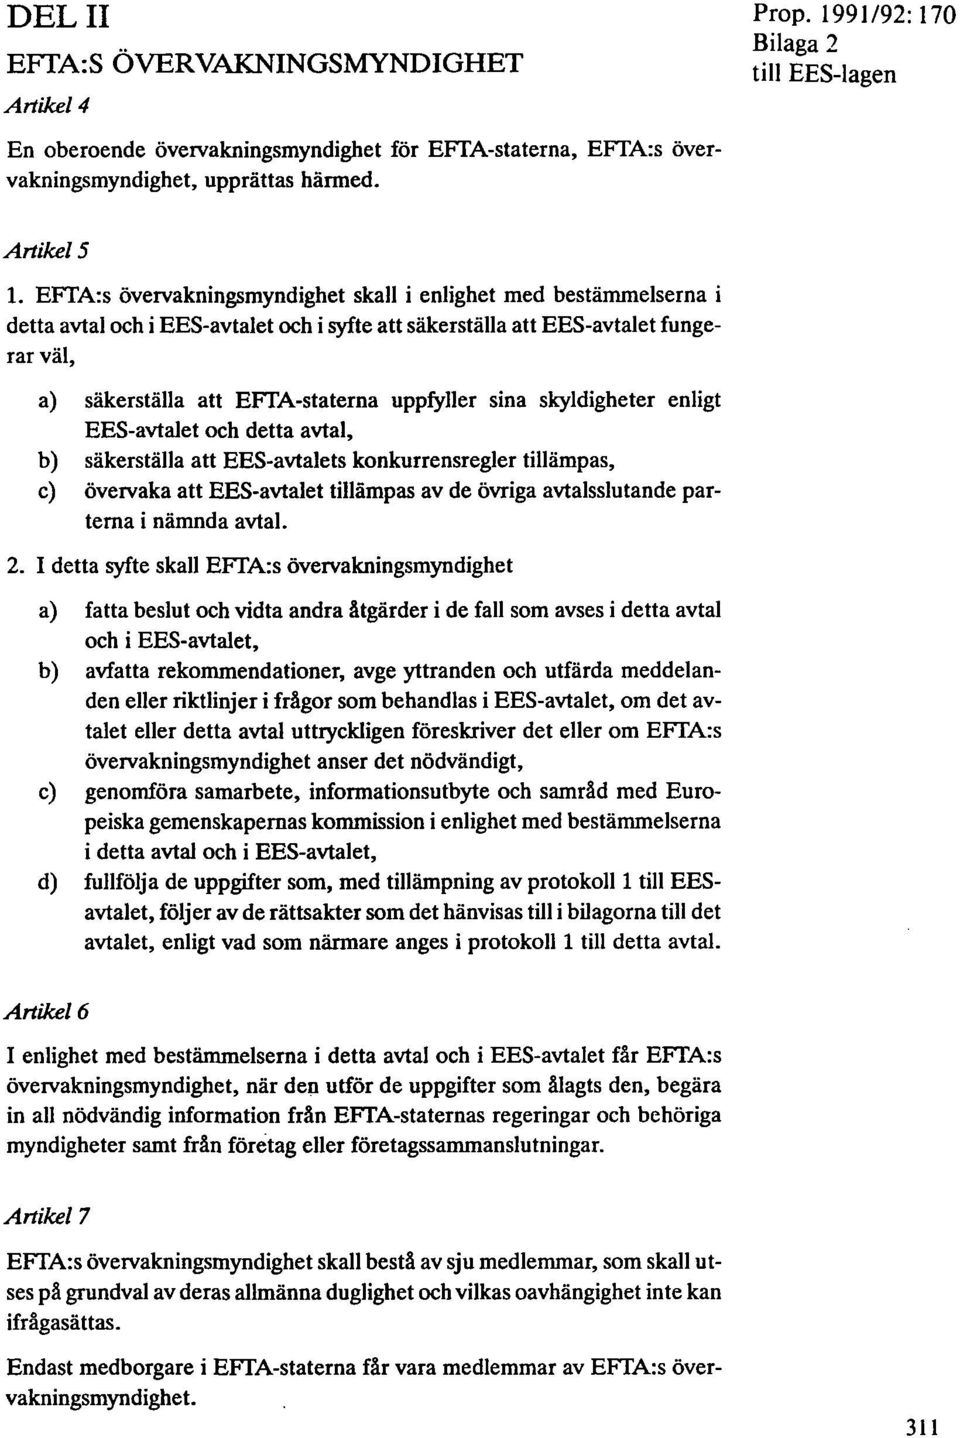 a) säkerställa att EFTA-staterna uppfyller sina skyldigheter enligt EES-avtalet och detta avtal, b) säkerställa att EES-avtalets konkurrensregler tillämpas, c) övervaka att EES-avtalet tillämpas av